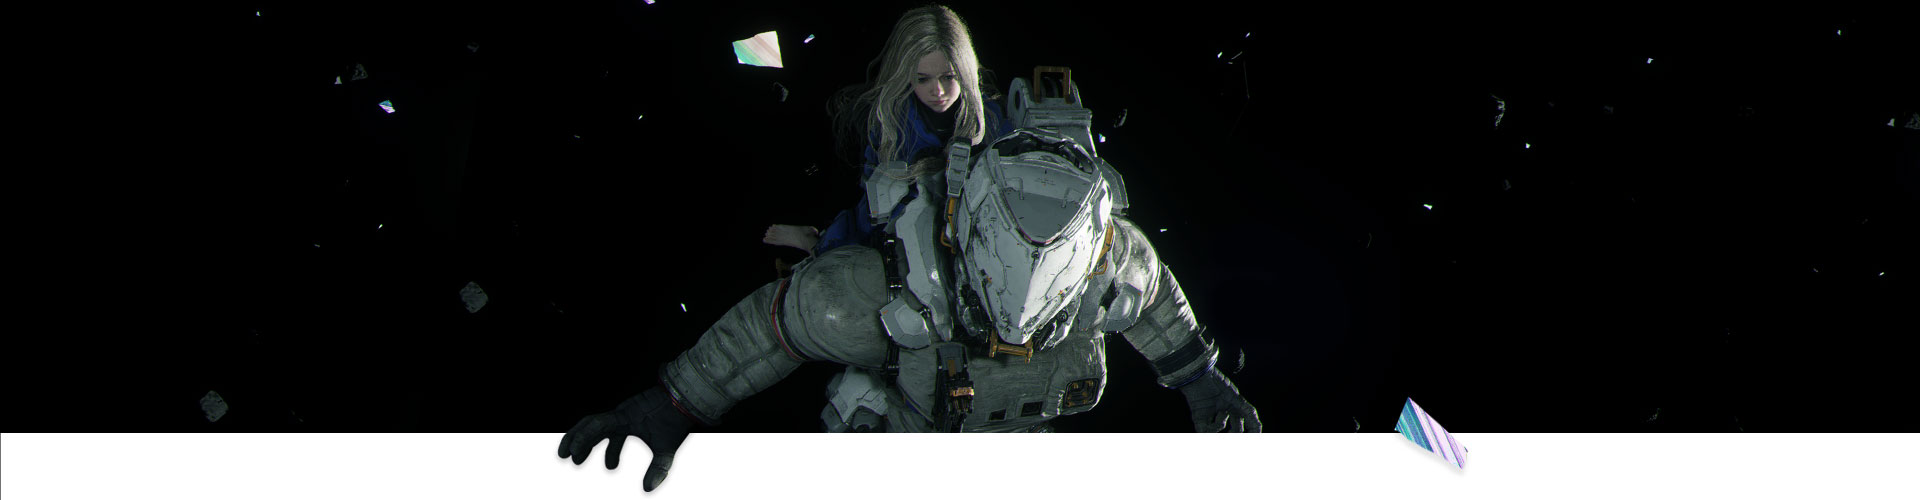 Uma menina nas costas de em um astronauta no espaço